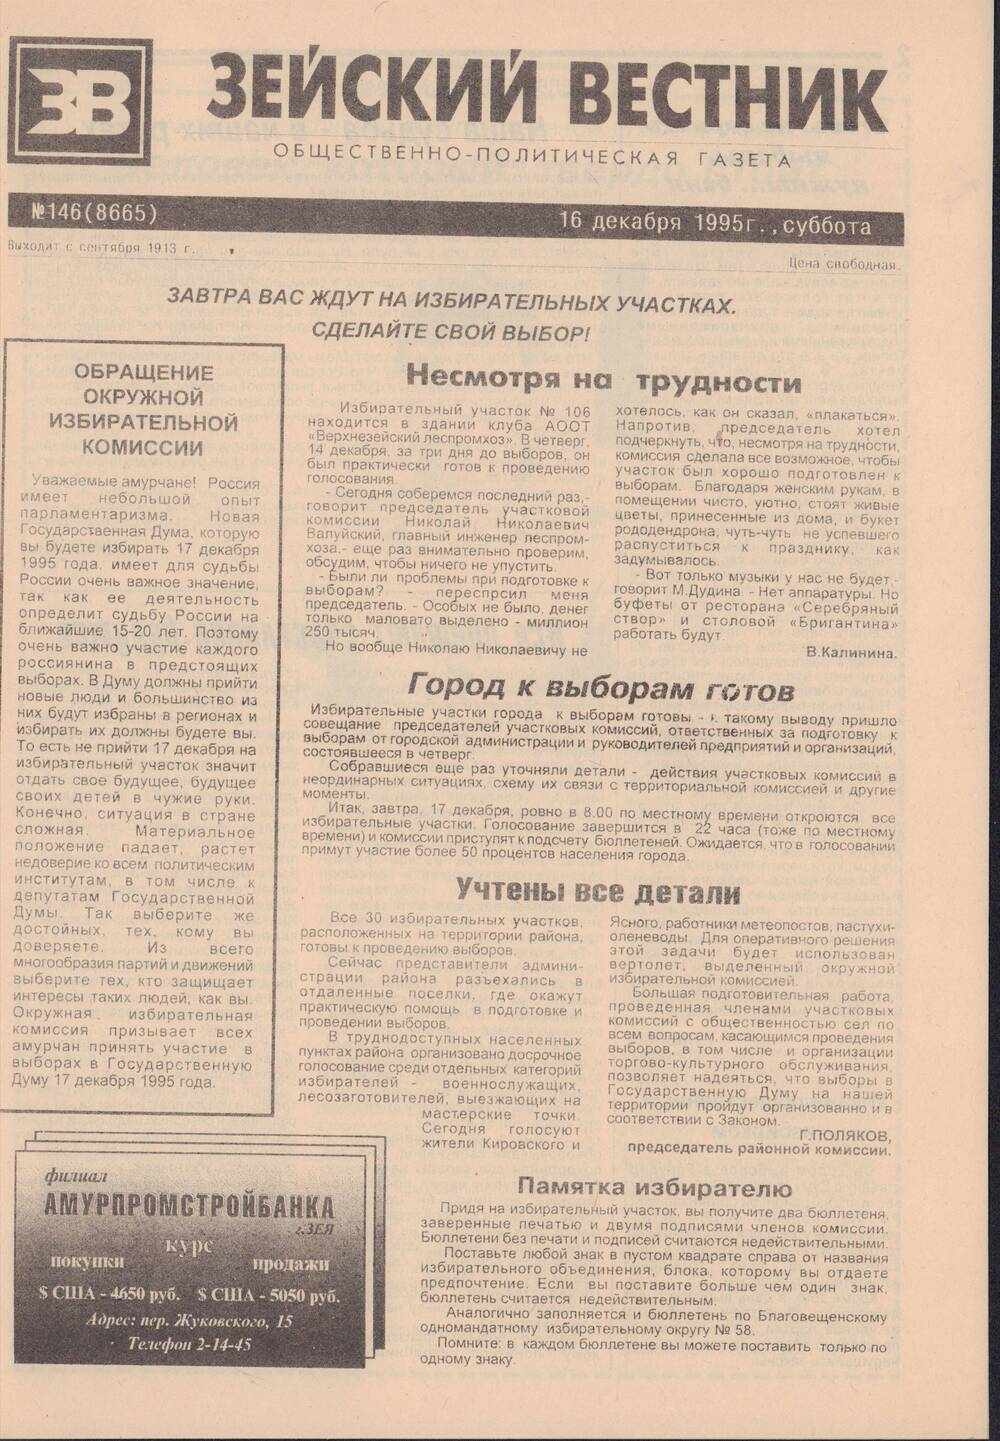 Газета Зейский вестник №146 от 16 декабря 1995 года с материалами о выборах в Государственную Думу.